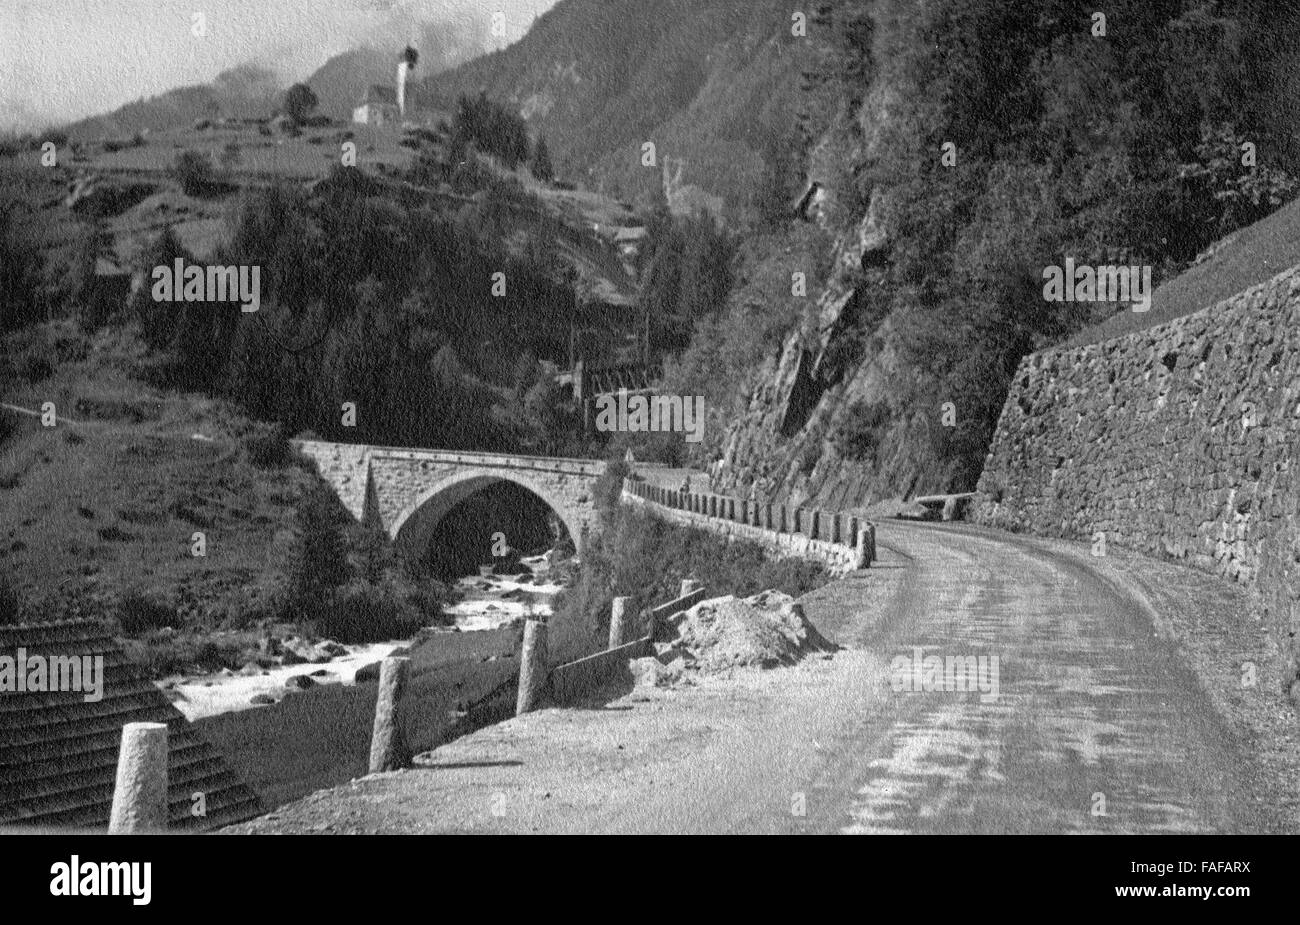 Die Furkapassstrasse im Kanton Uri, Schweiz 1930er Jahre. Furka mountain pass at Uri canton, Switzerland 1930s. Stock Photo